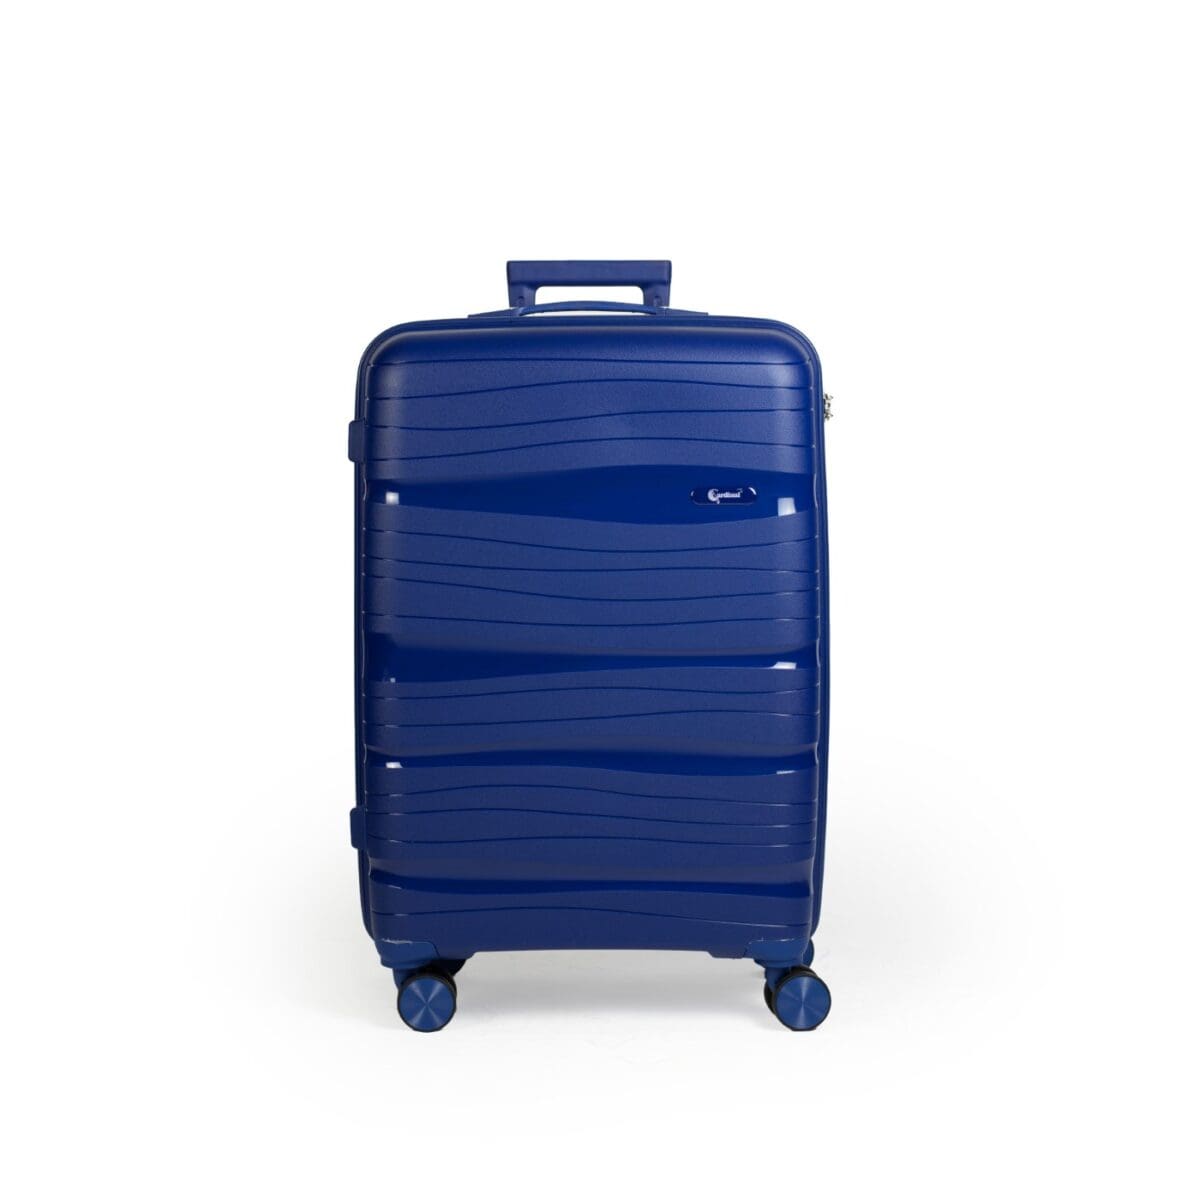 Βαλίτσα μεσαία με κλειδαριά tsa, υλικό PP(άθραυστο) σε χρώμα μπορντό με διπλά ροδάκια .